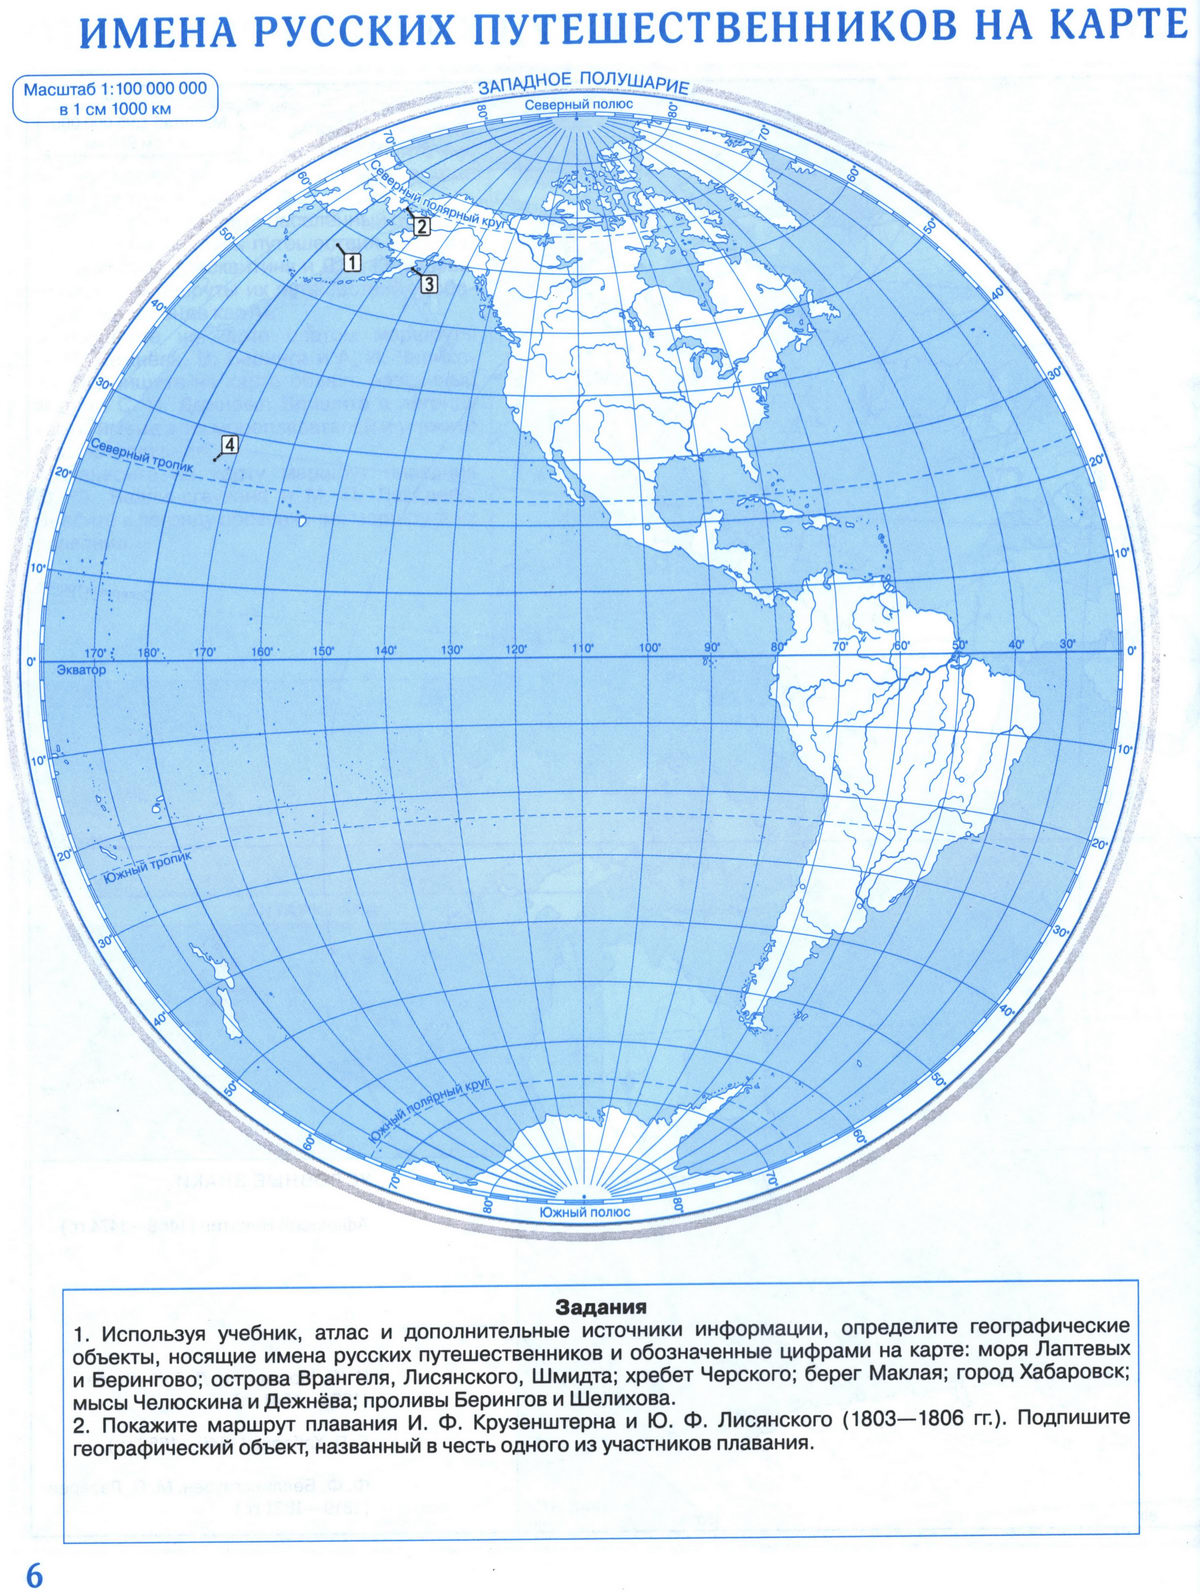 Атлас и контурная карта по географии 7 класс дрофа